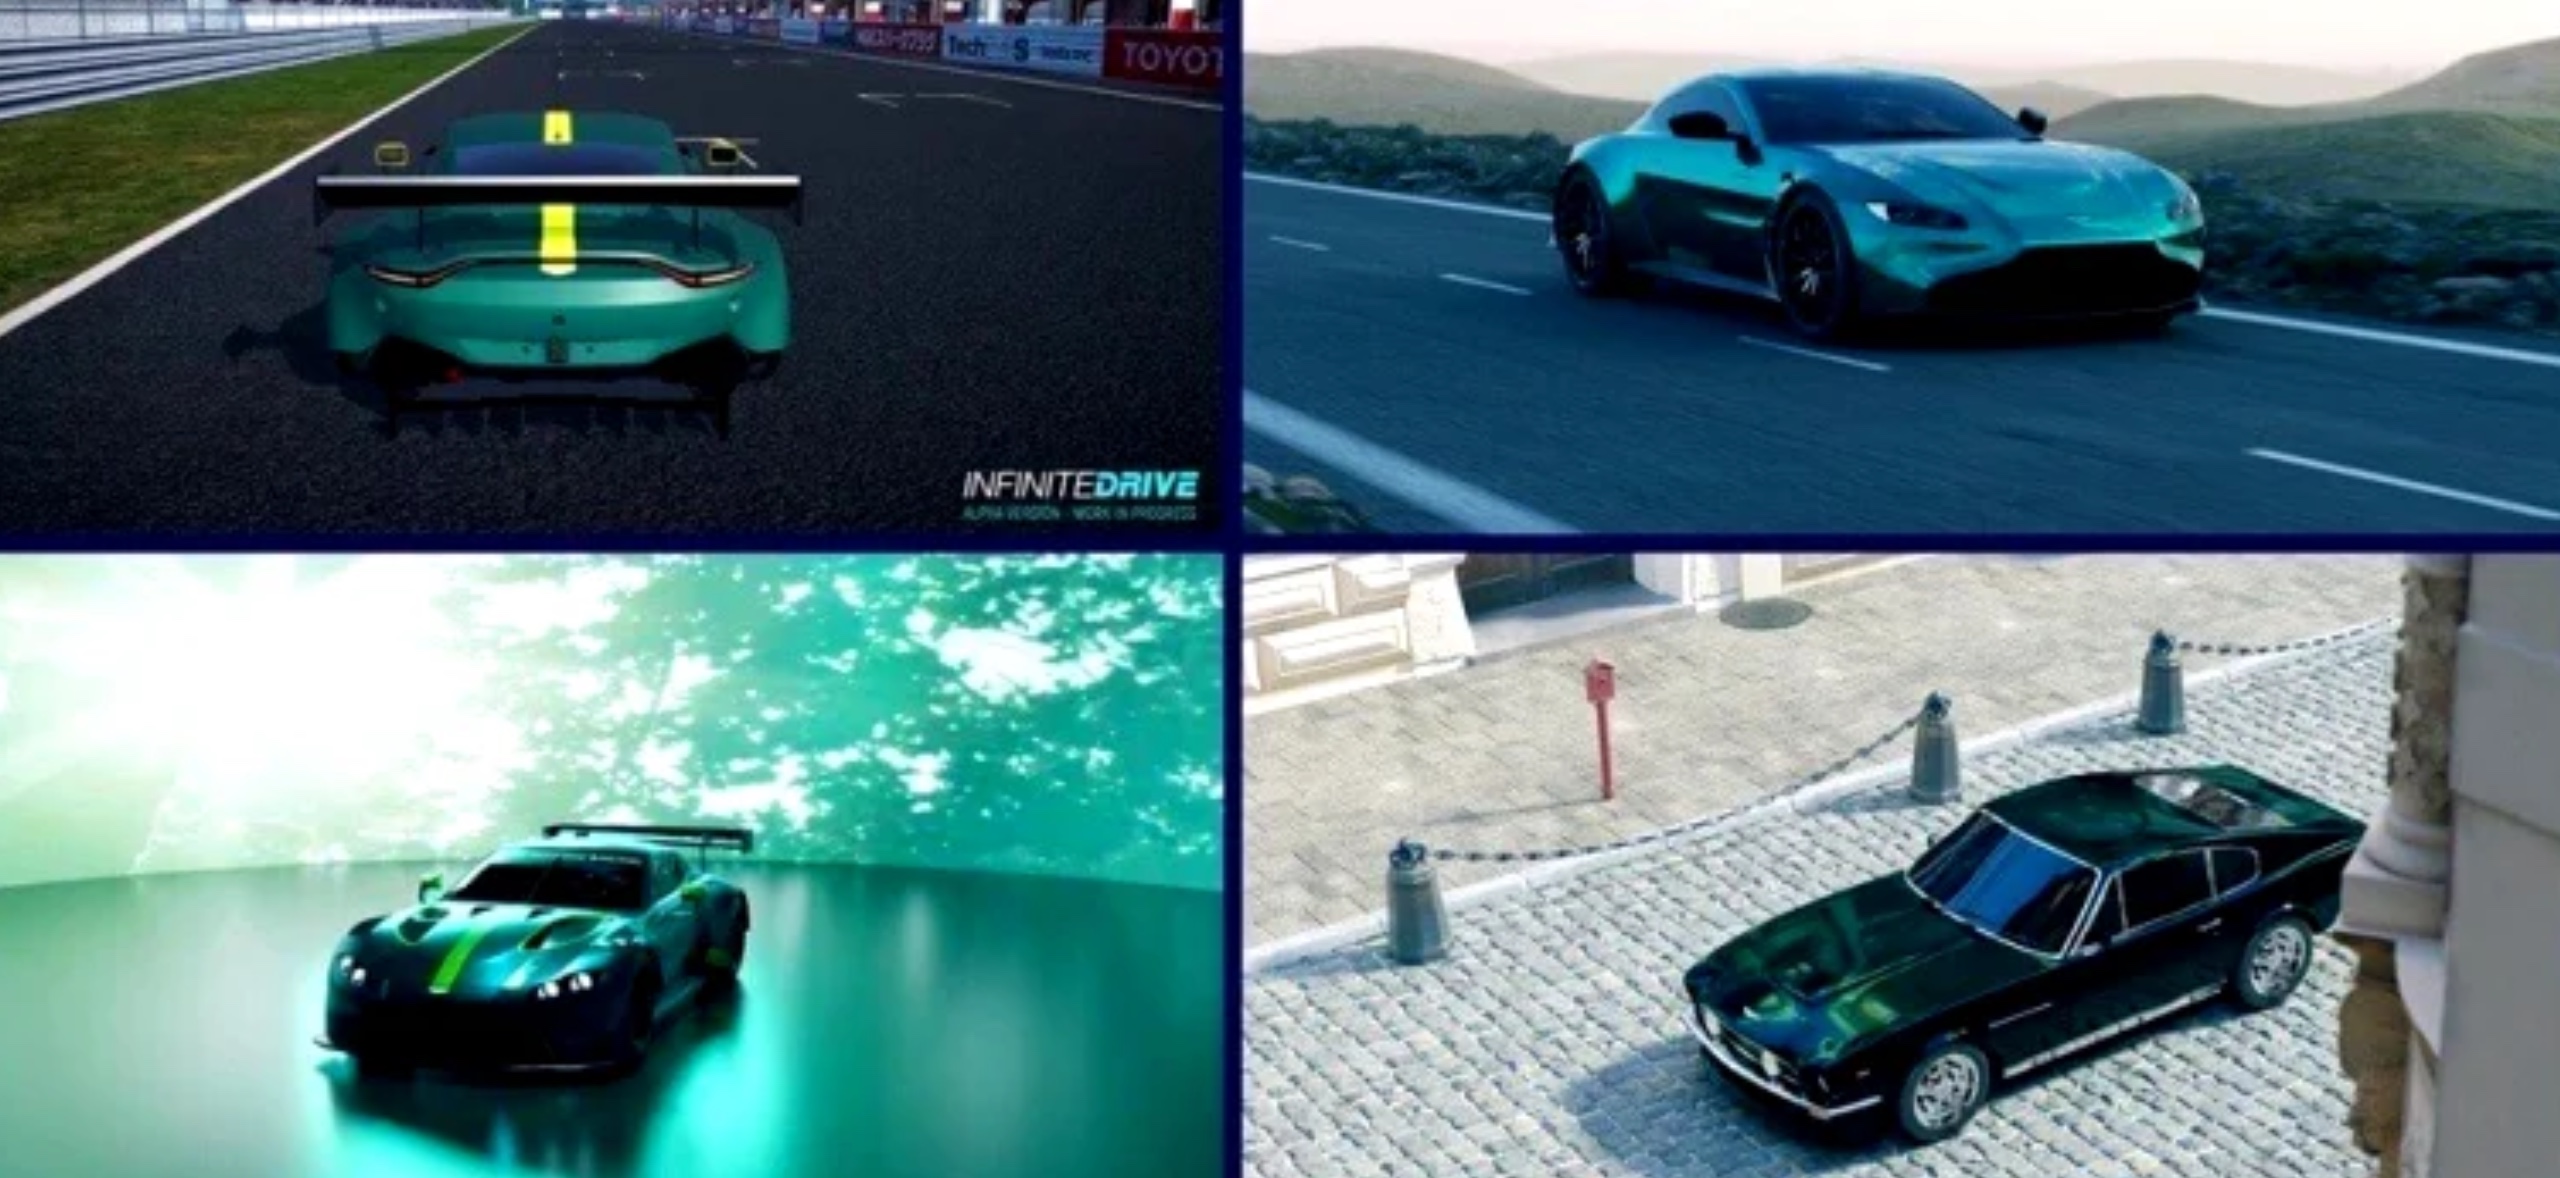 Az elektromos járművek lejáratása: a Honda VR-t használ, Svájc az elektromos járművek betiltásának minősül, az Aston Martin átmegy a Metaverse-be